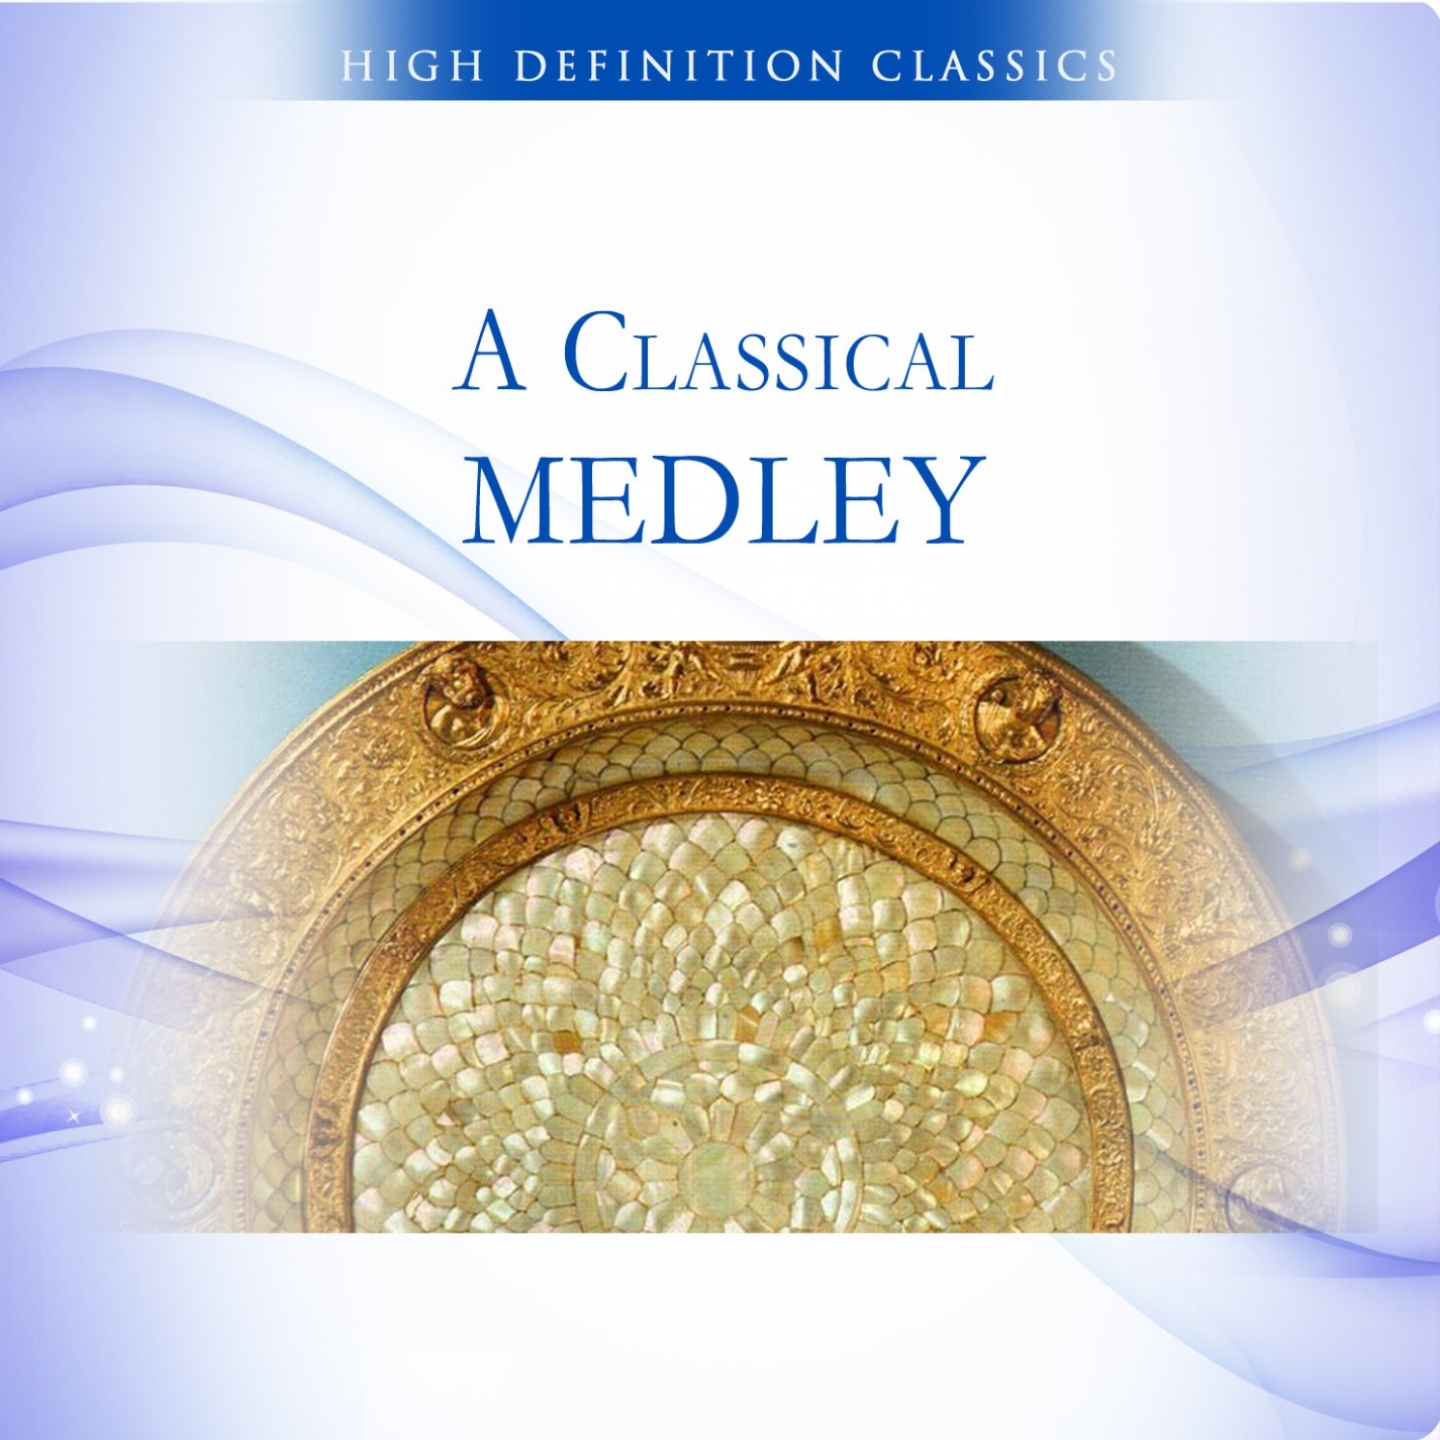 A Classical Medley